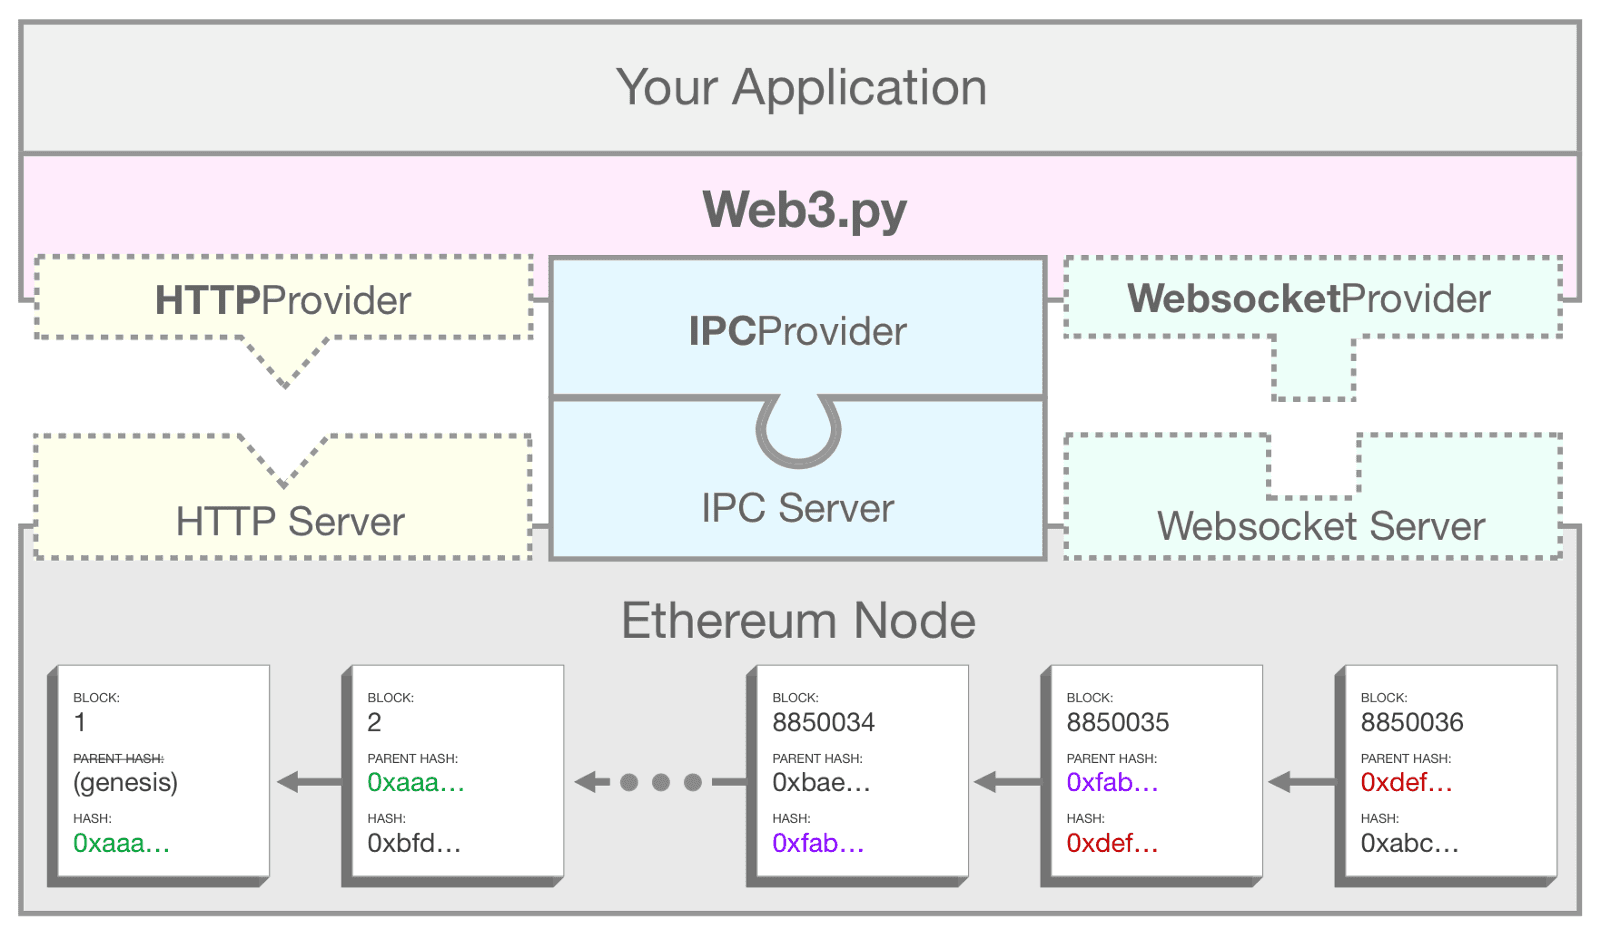 描述 web3.py 如何使用 IPC 将应用程序连接到以太坊节点的示意图